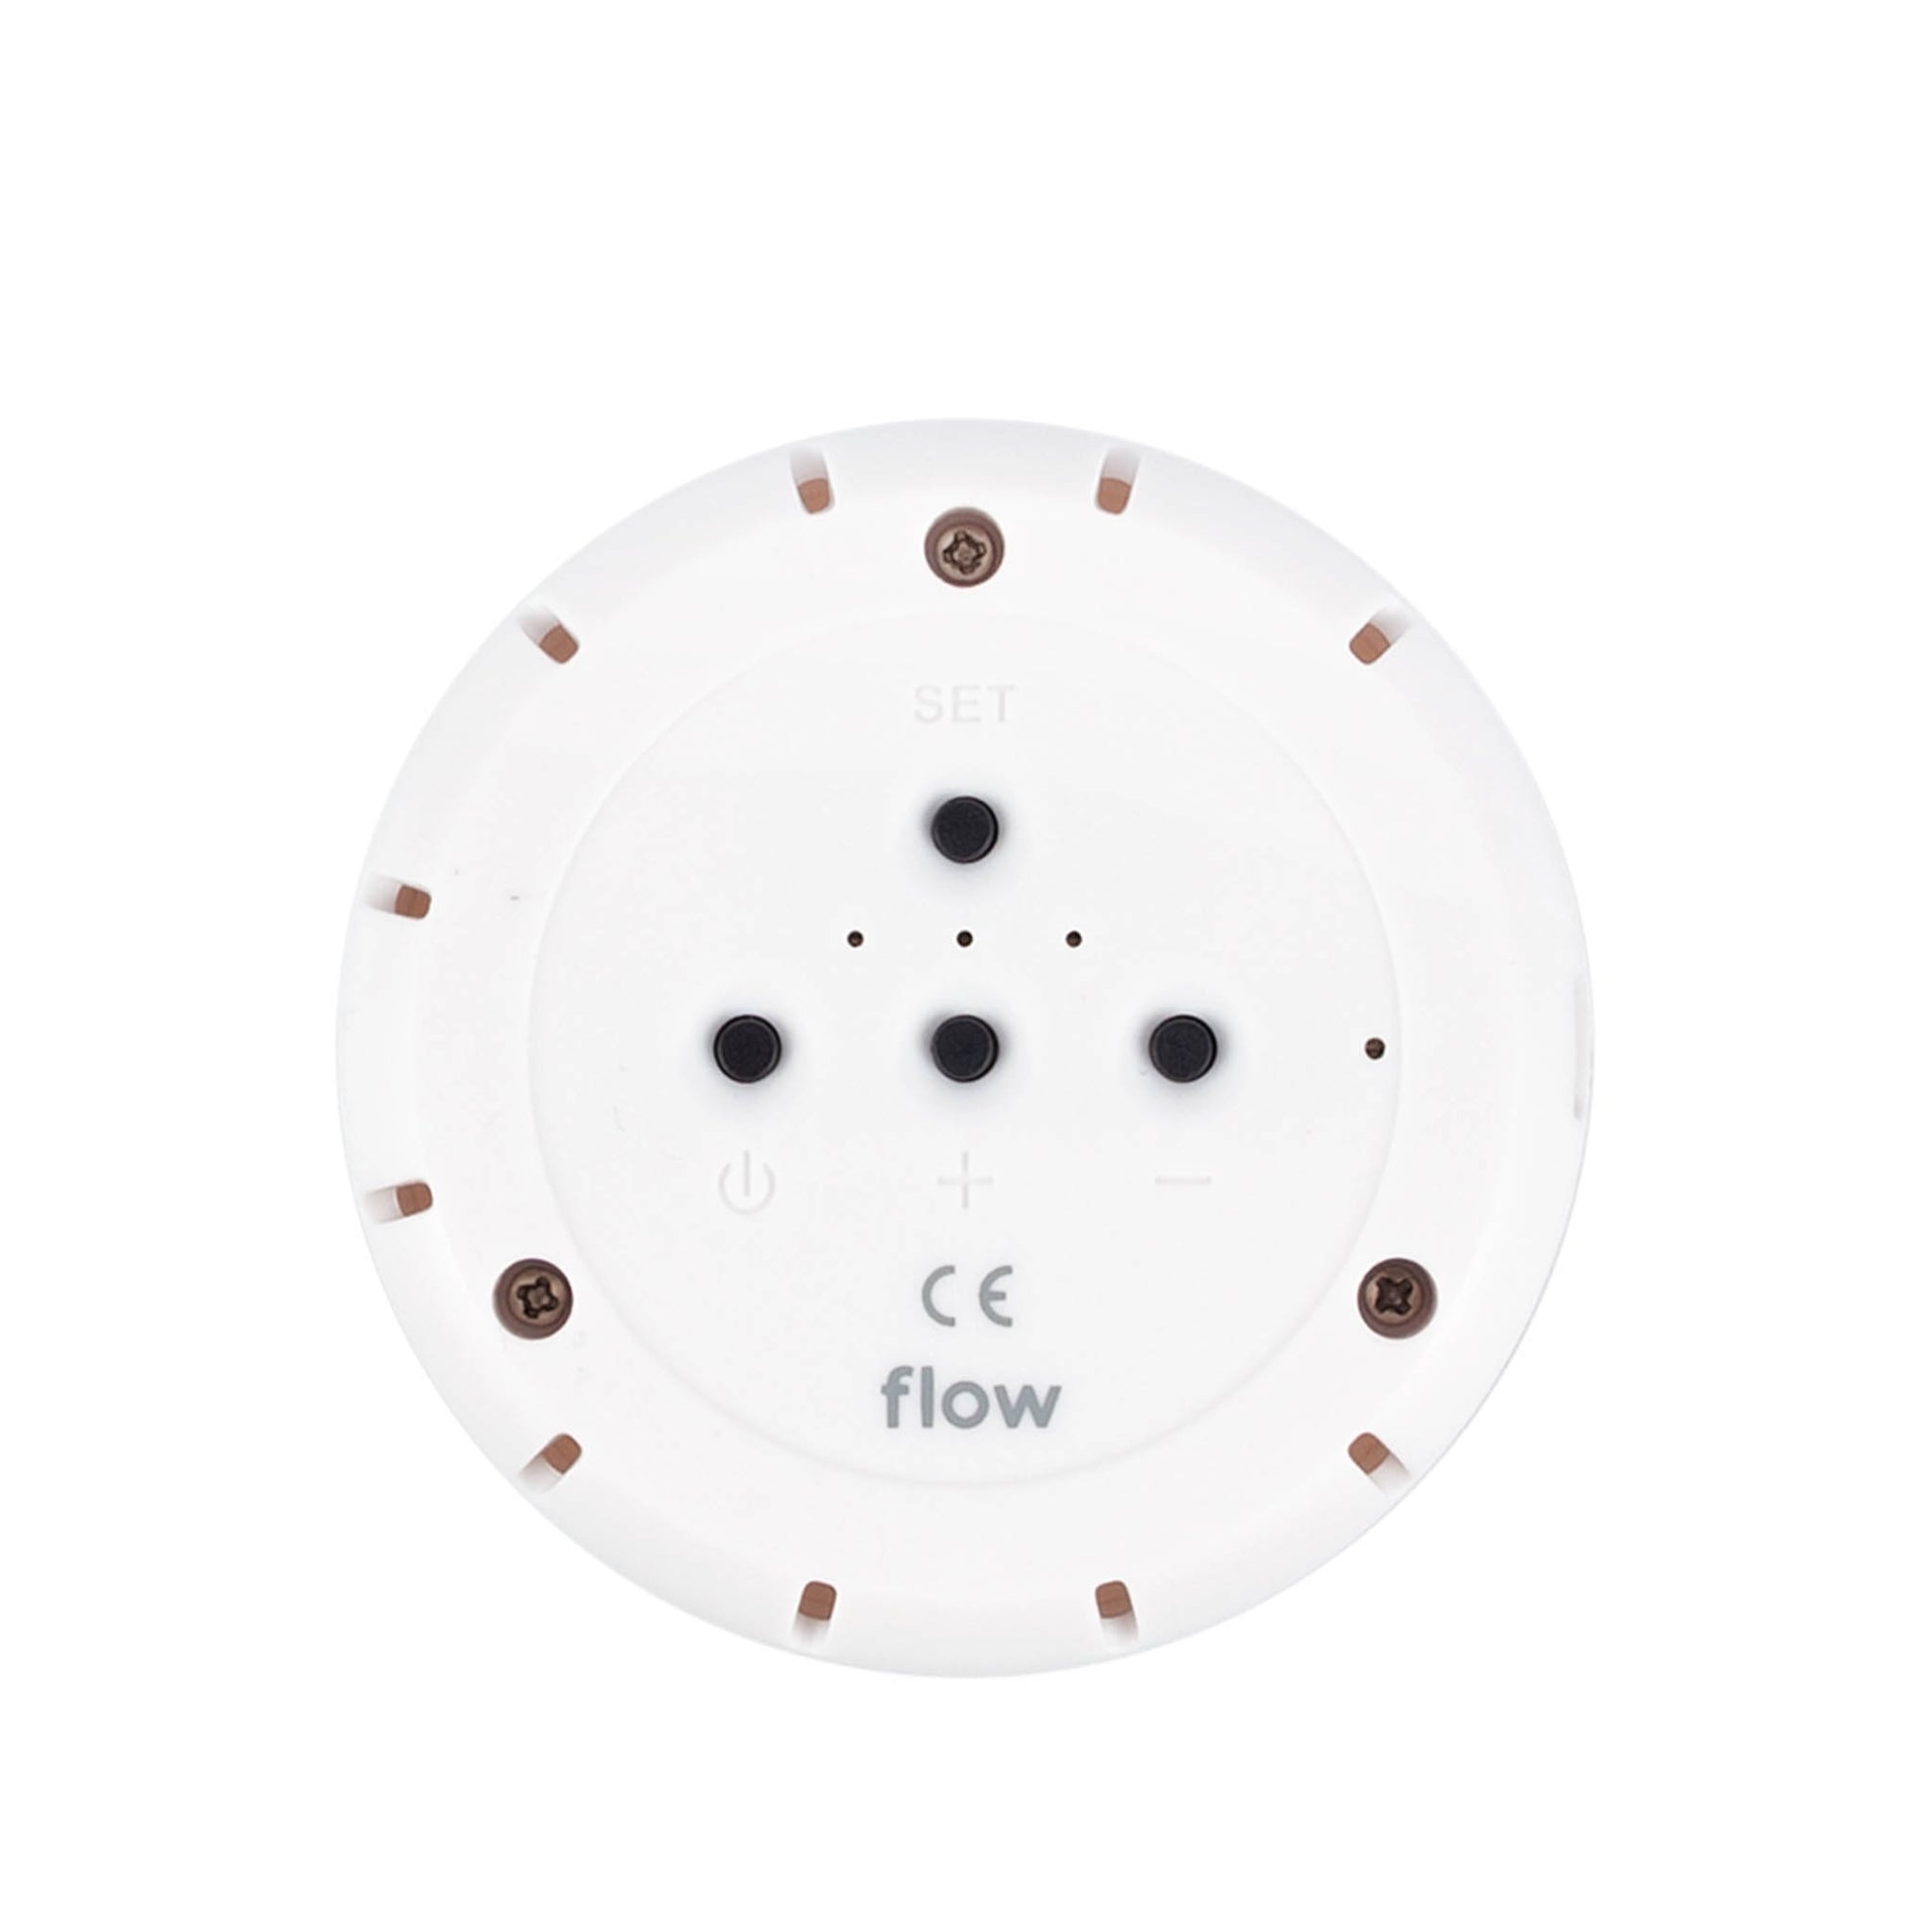 Flow Amsterdam - Kuscheltier mit Bluetooth Lautsprecher "Olly Bluetooth speaker" | off-white - Leja Concept Store